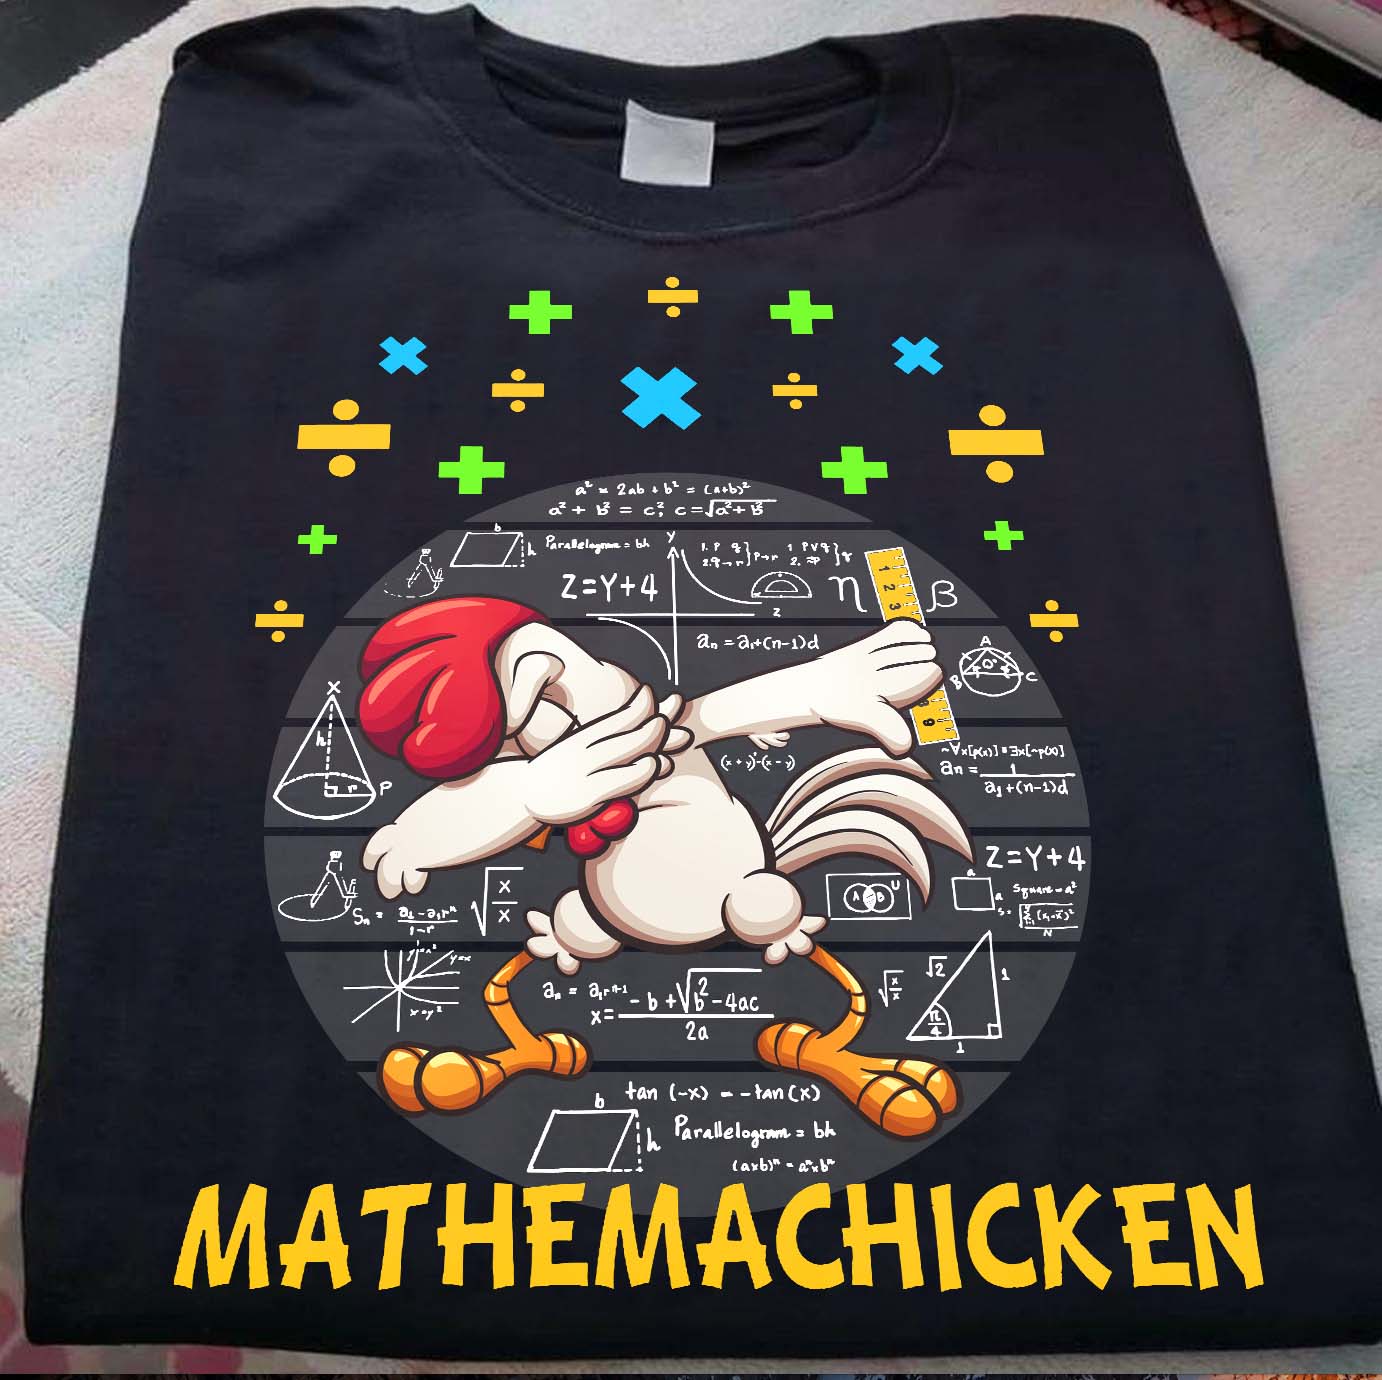 Mathemachicken - Chicken DAB, chicken love math, chicken lover